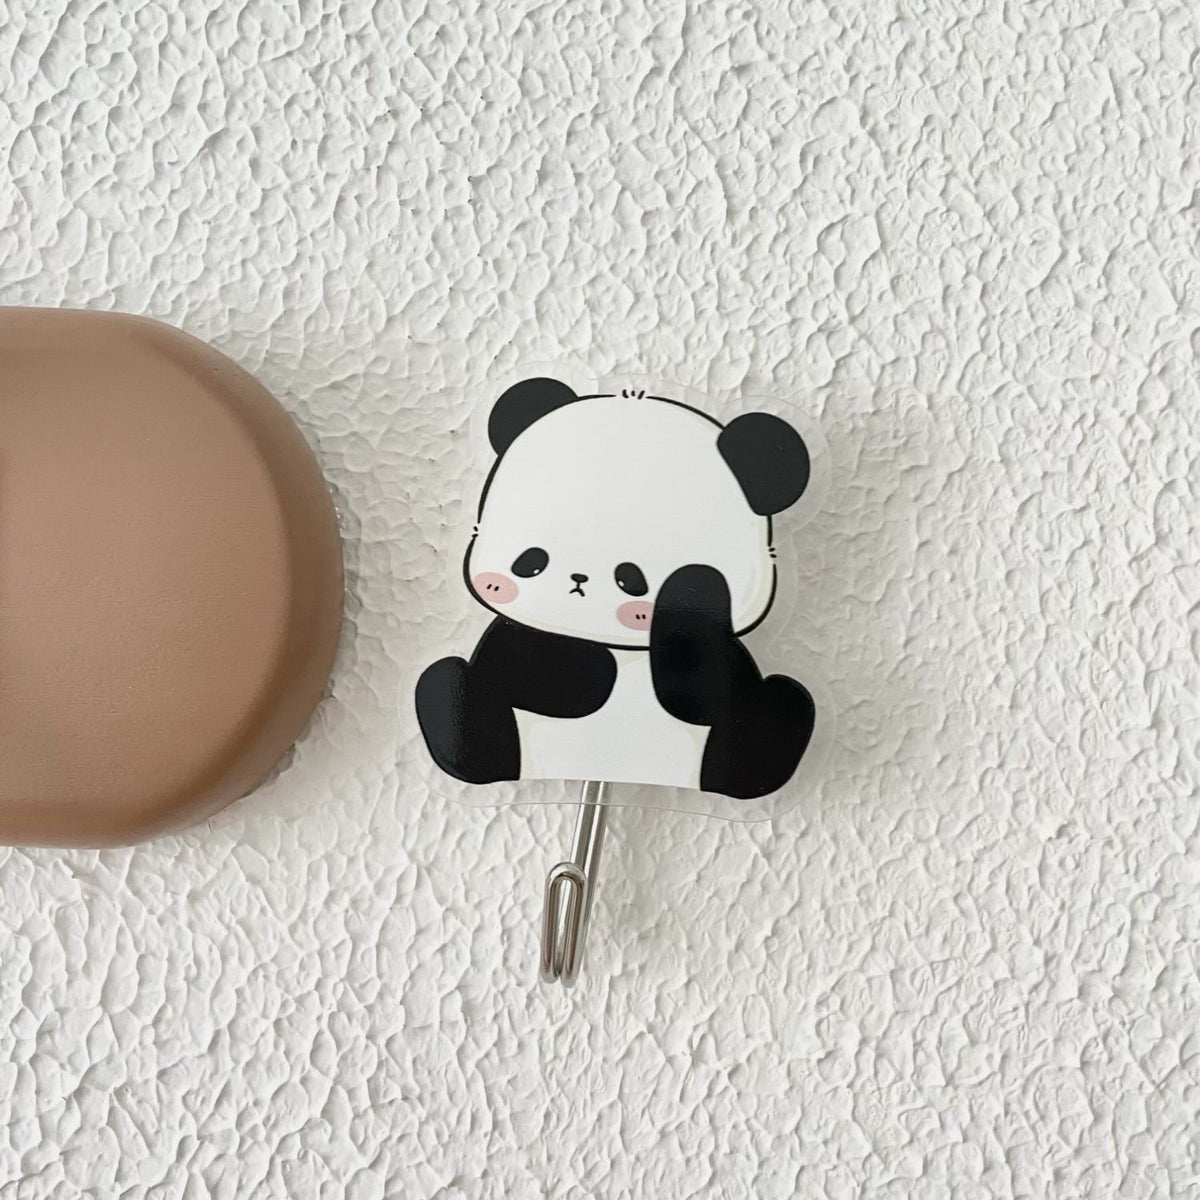 Cute panda bathroom hook